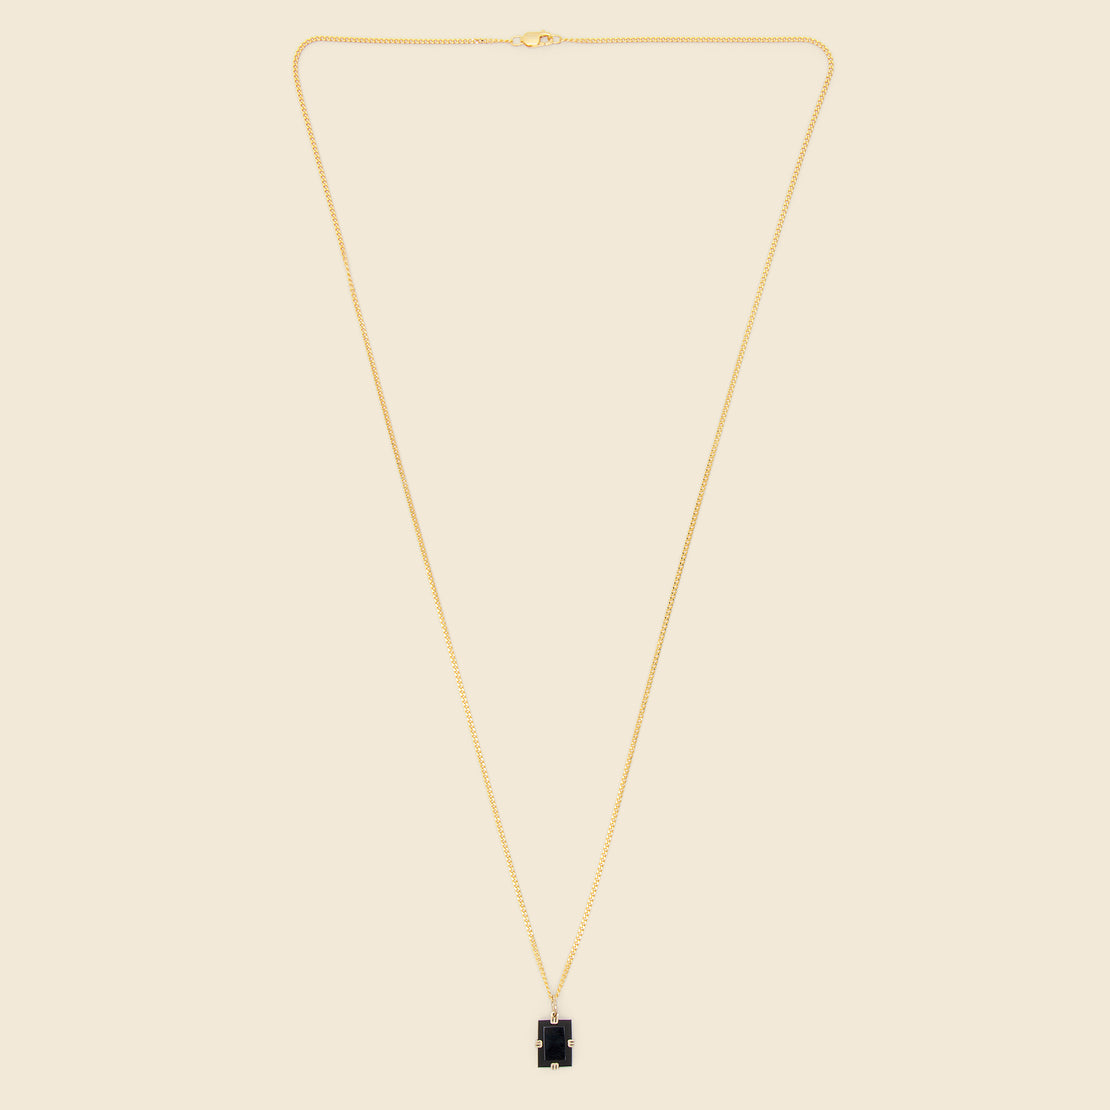 Lennox Onyx Necklace - Black/Gold Vermeil - Miansai - STAG Provisions - Accessories - Necklaces